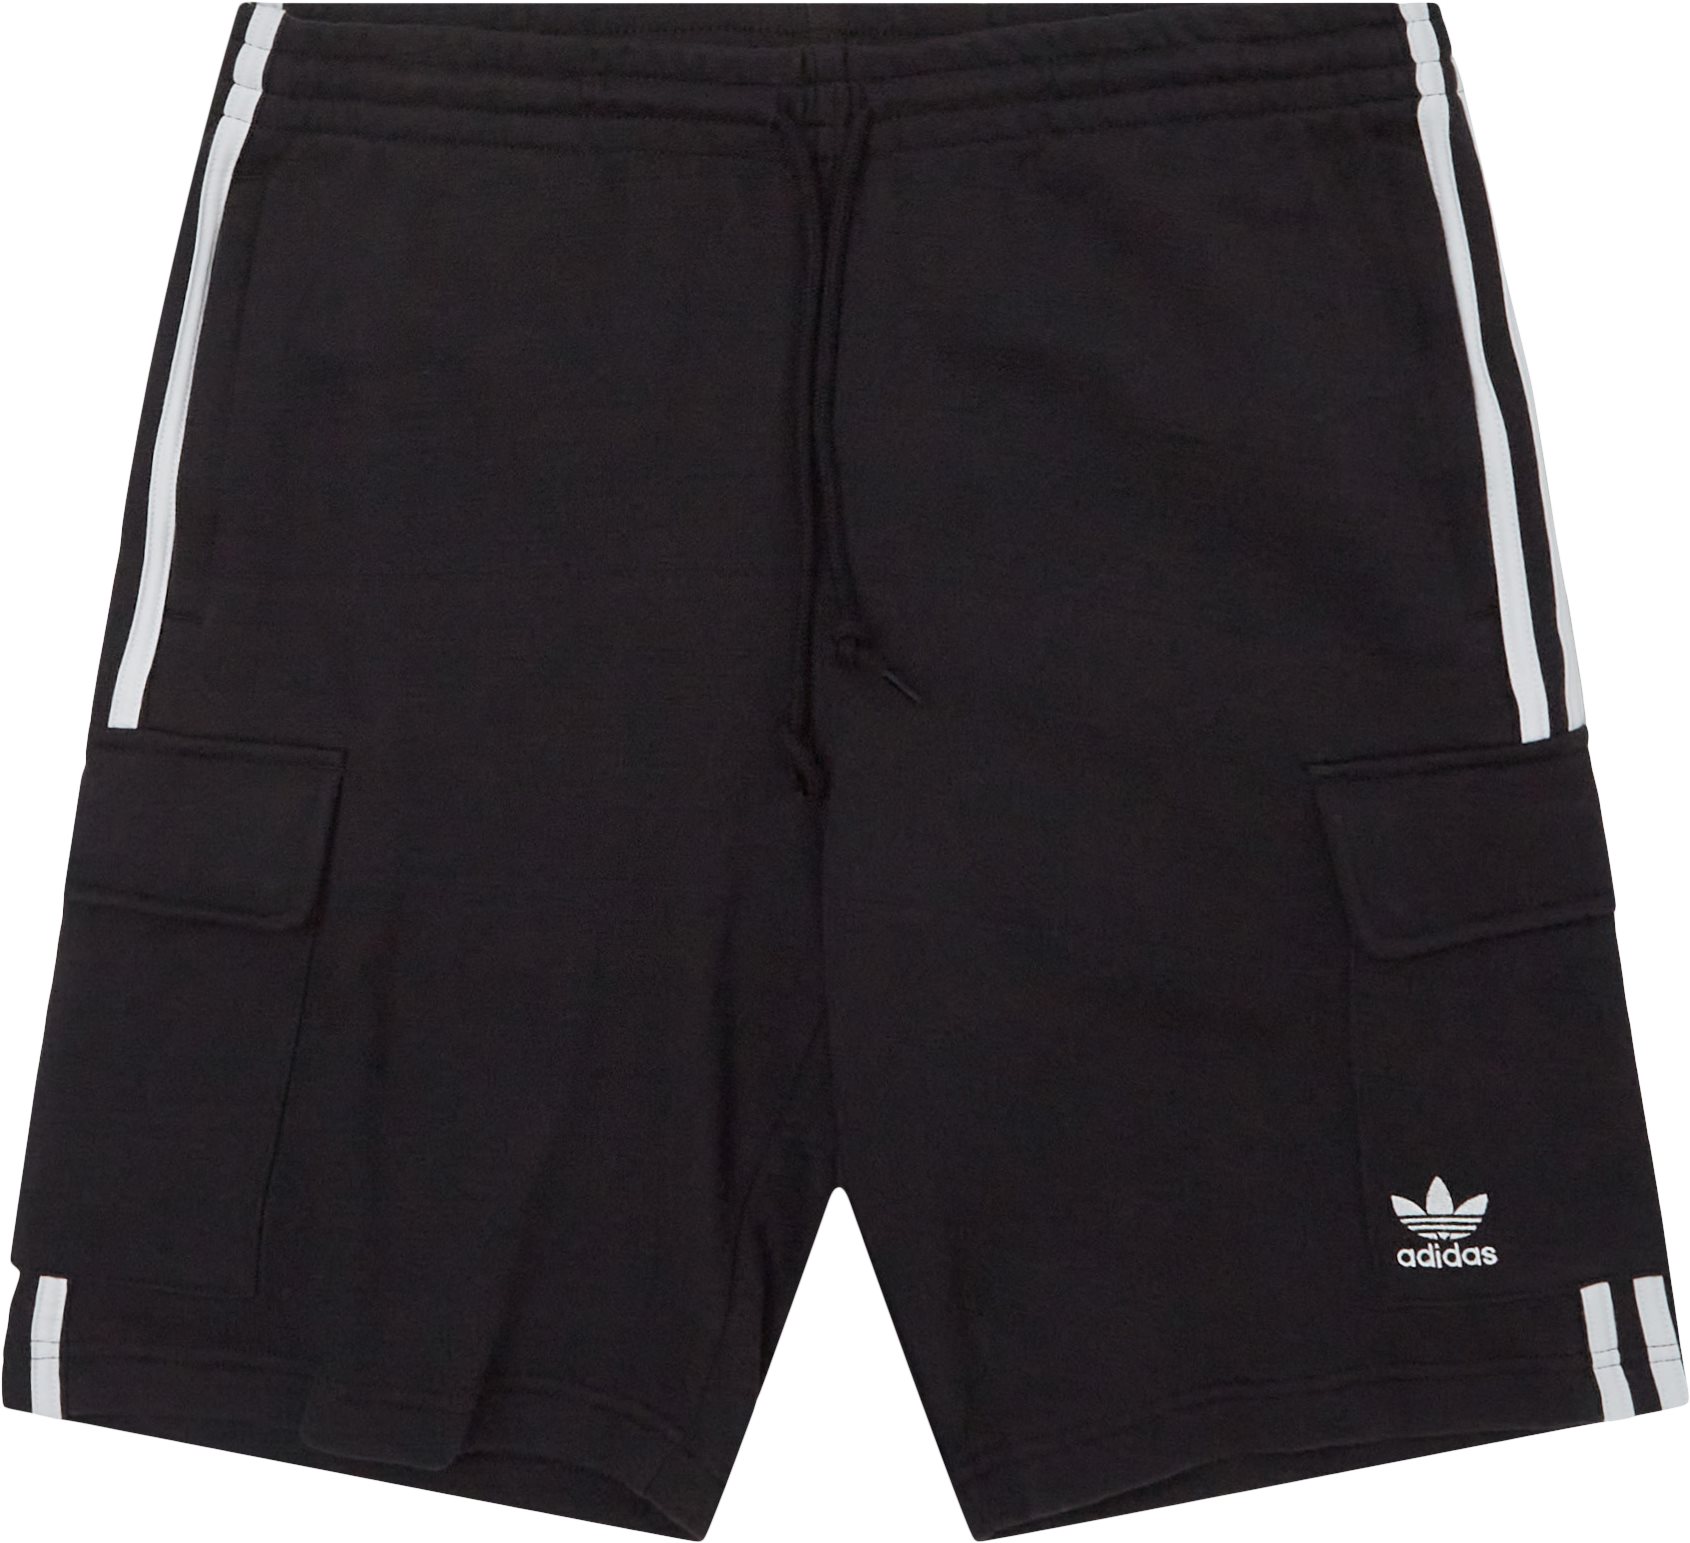 Adidas Originals Shorts 3S CARGO HB9542 Black